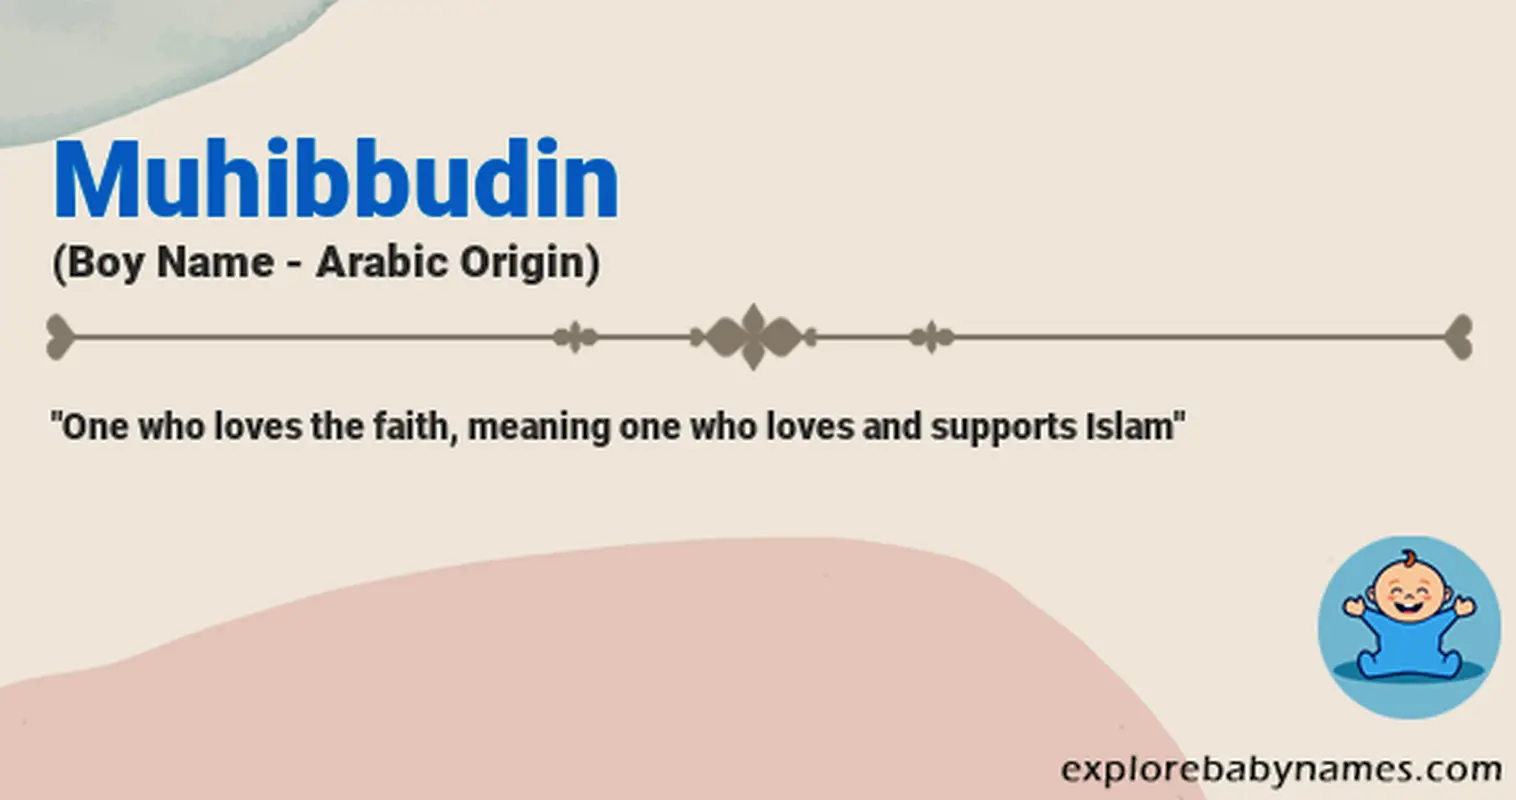 Meaning of Muhibbudin